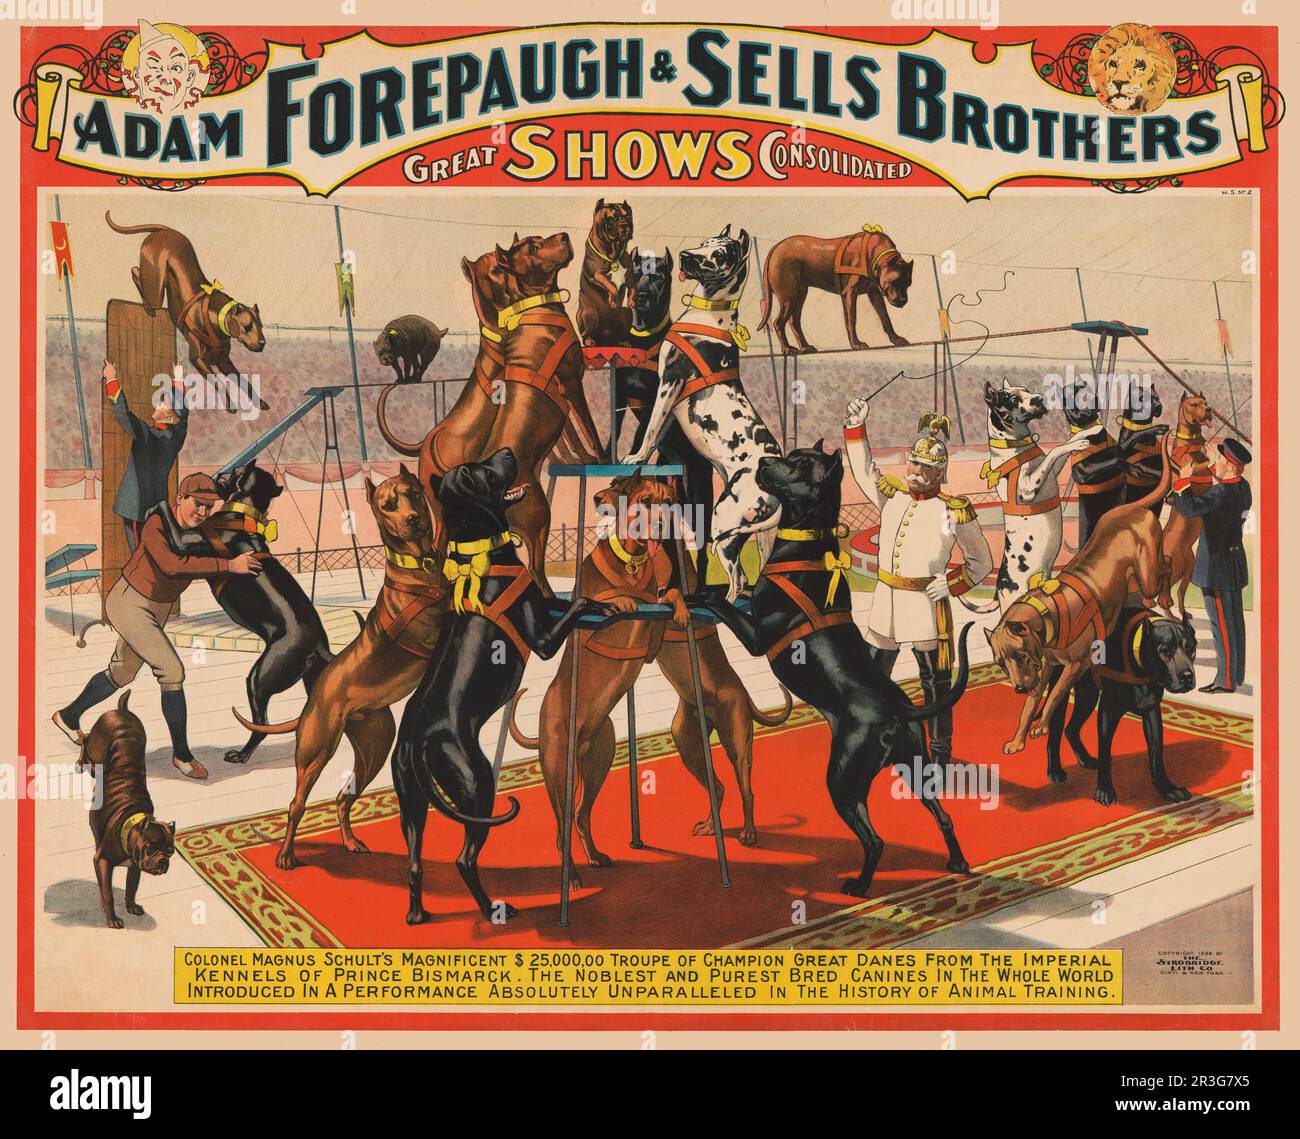 Vintage Adam Forepaugh et vend l'affiche de cirque Brothers montrant les grands Danois en train de jouer avec l'entraîneur, vers 1898. Banque D'Images